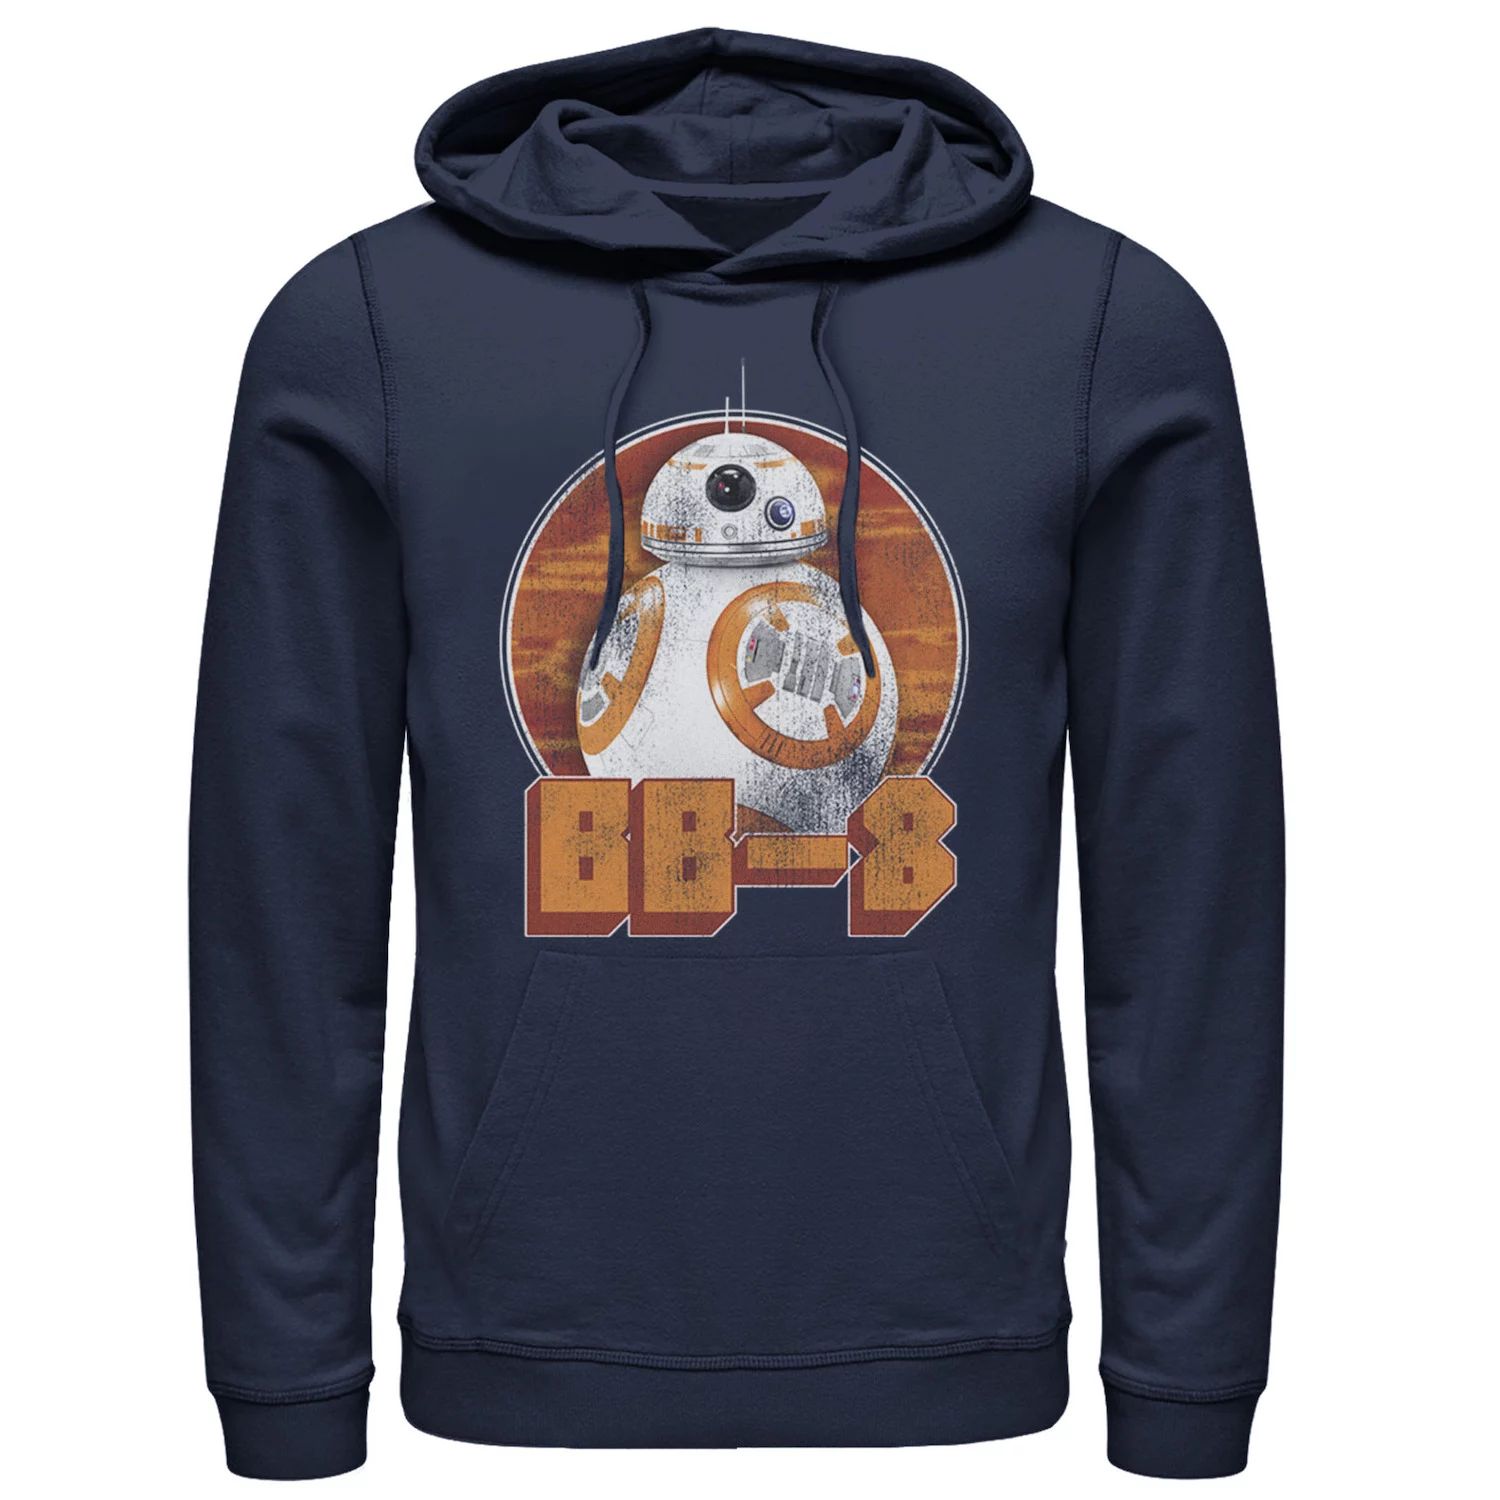 Мужской пуловер с капюшоном и рисунком Roller Ball Star Wars